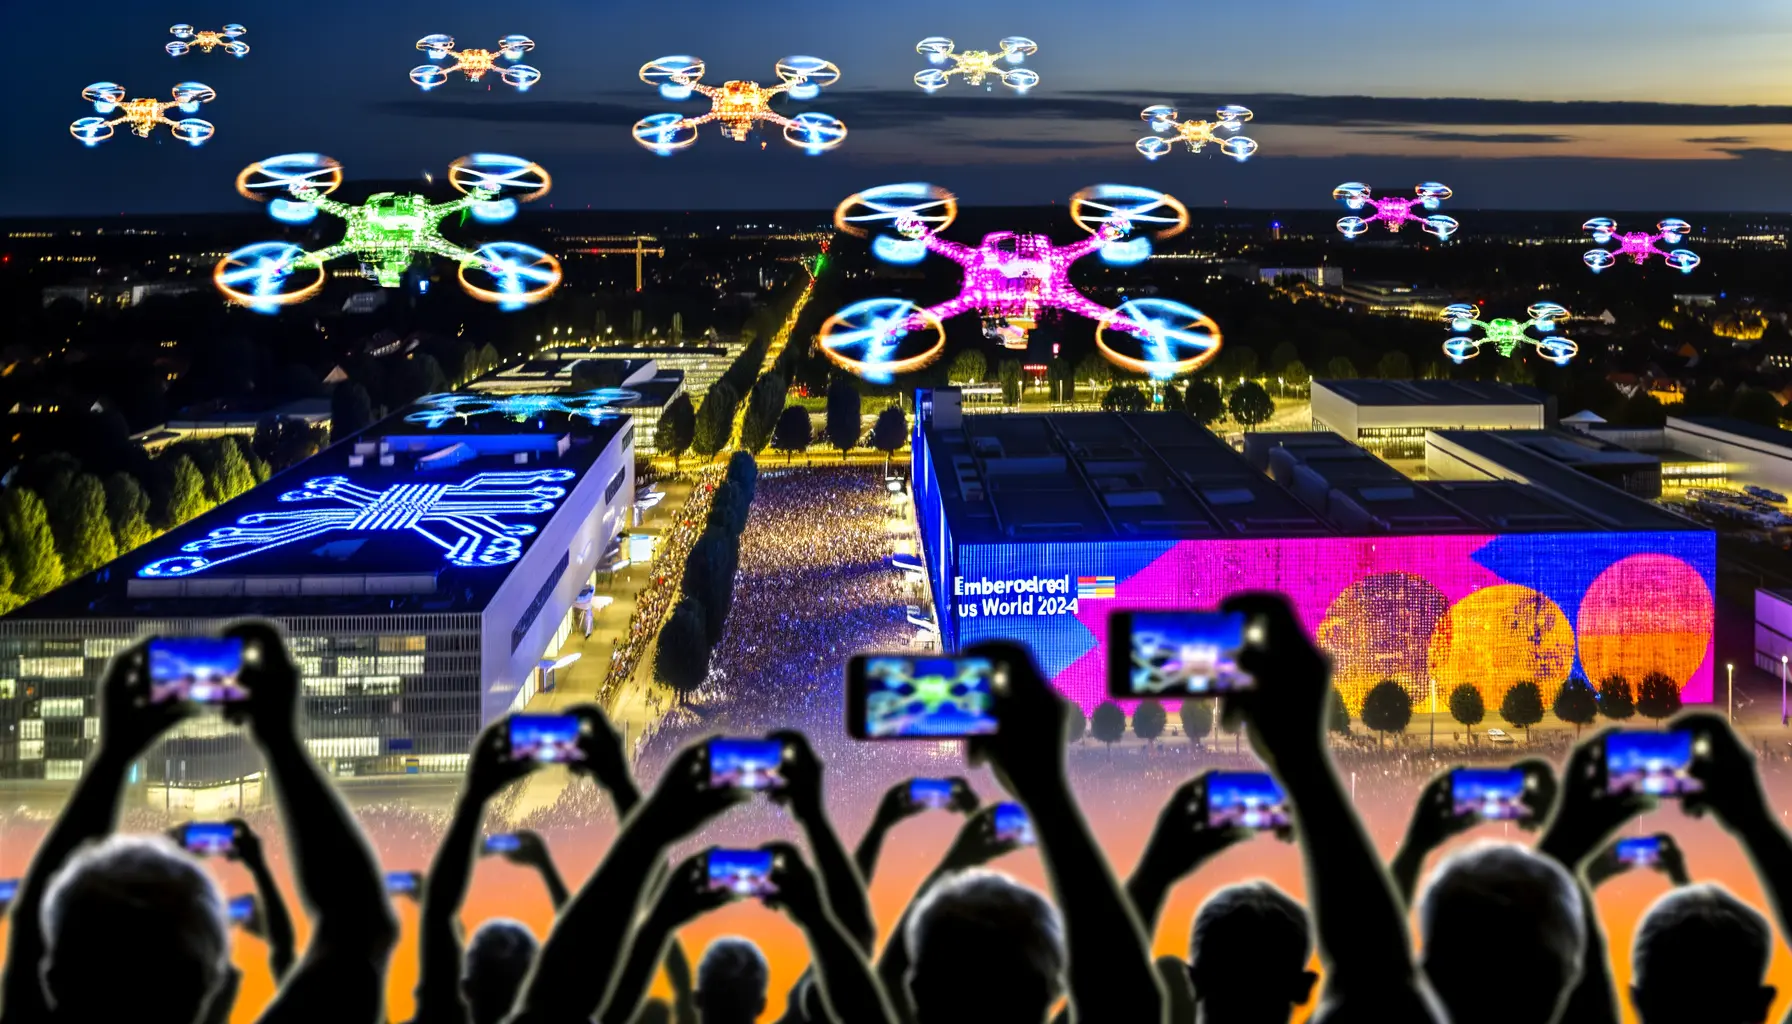 Dynamische farbenfrohe Drohnenshow über Nürnberg 2024